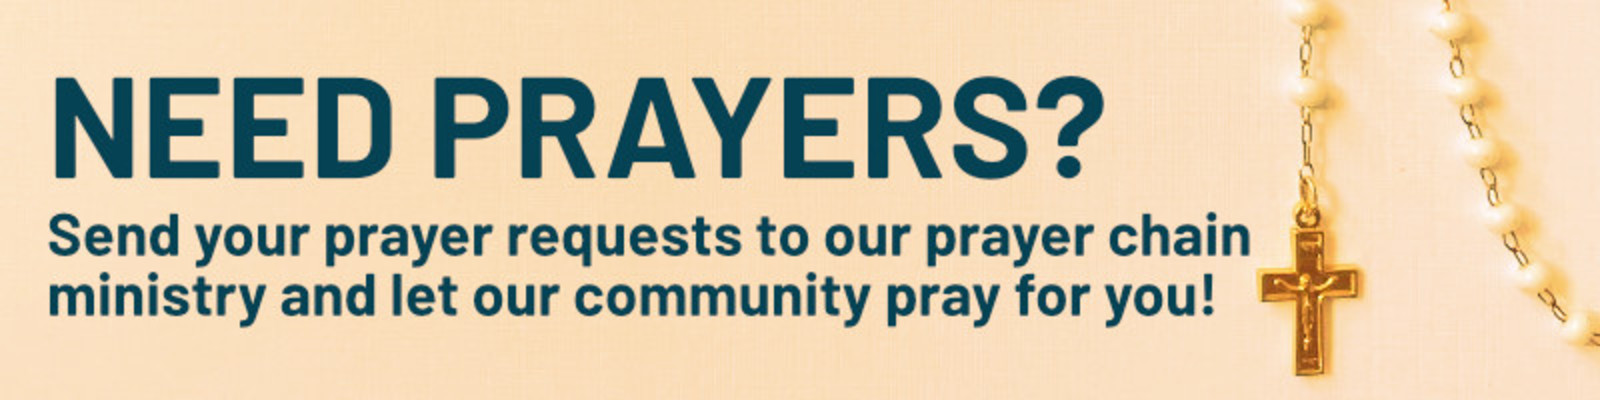 Prayer Chain Request